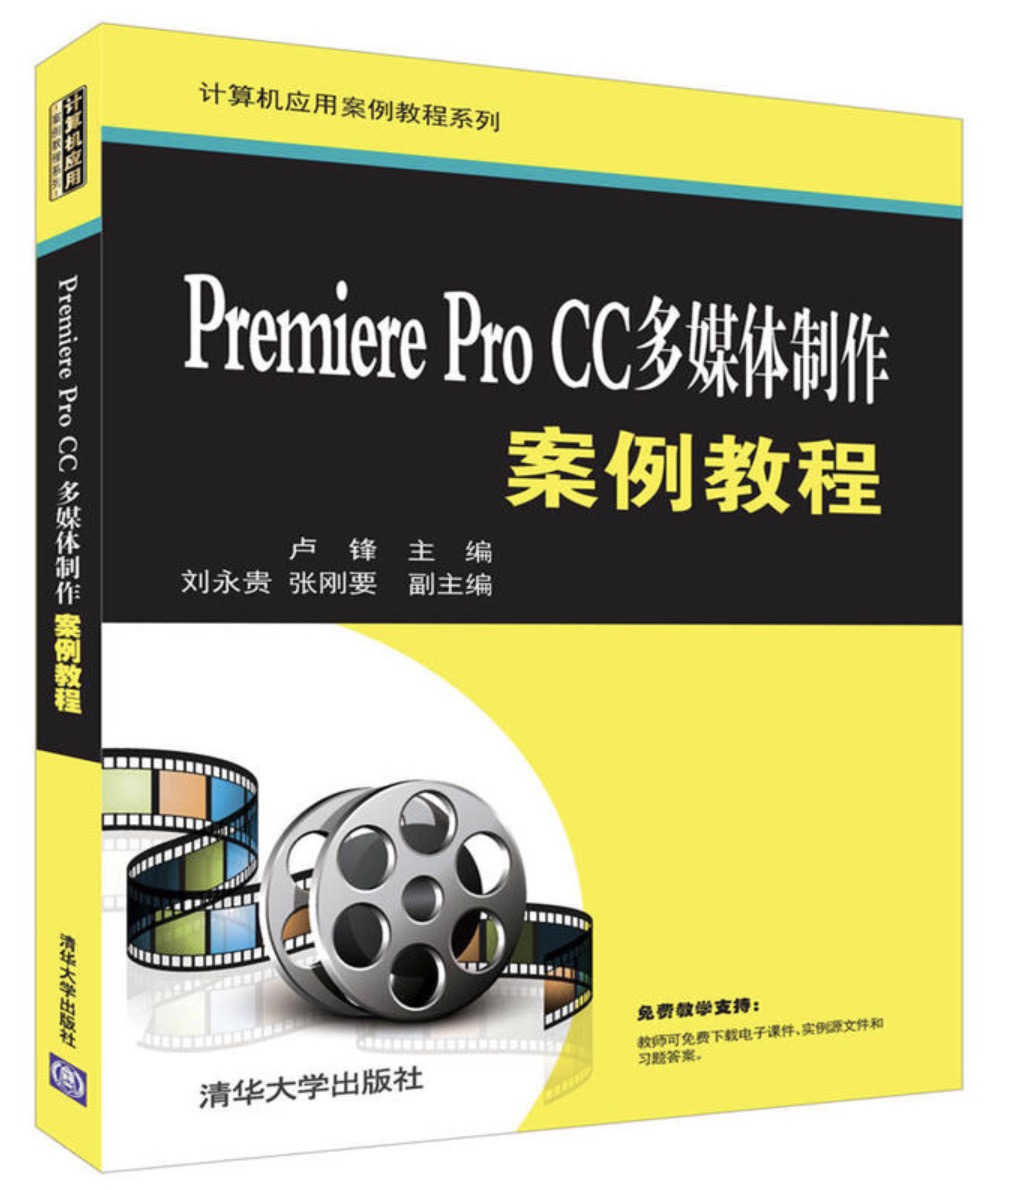 Premiere Pro CC多媒體製作案例教程